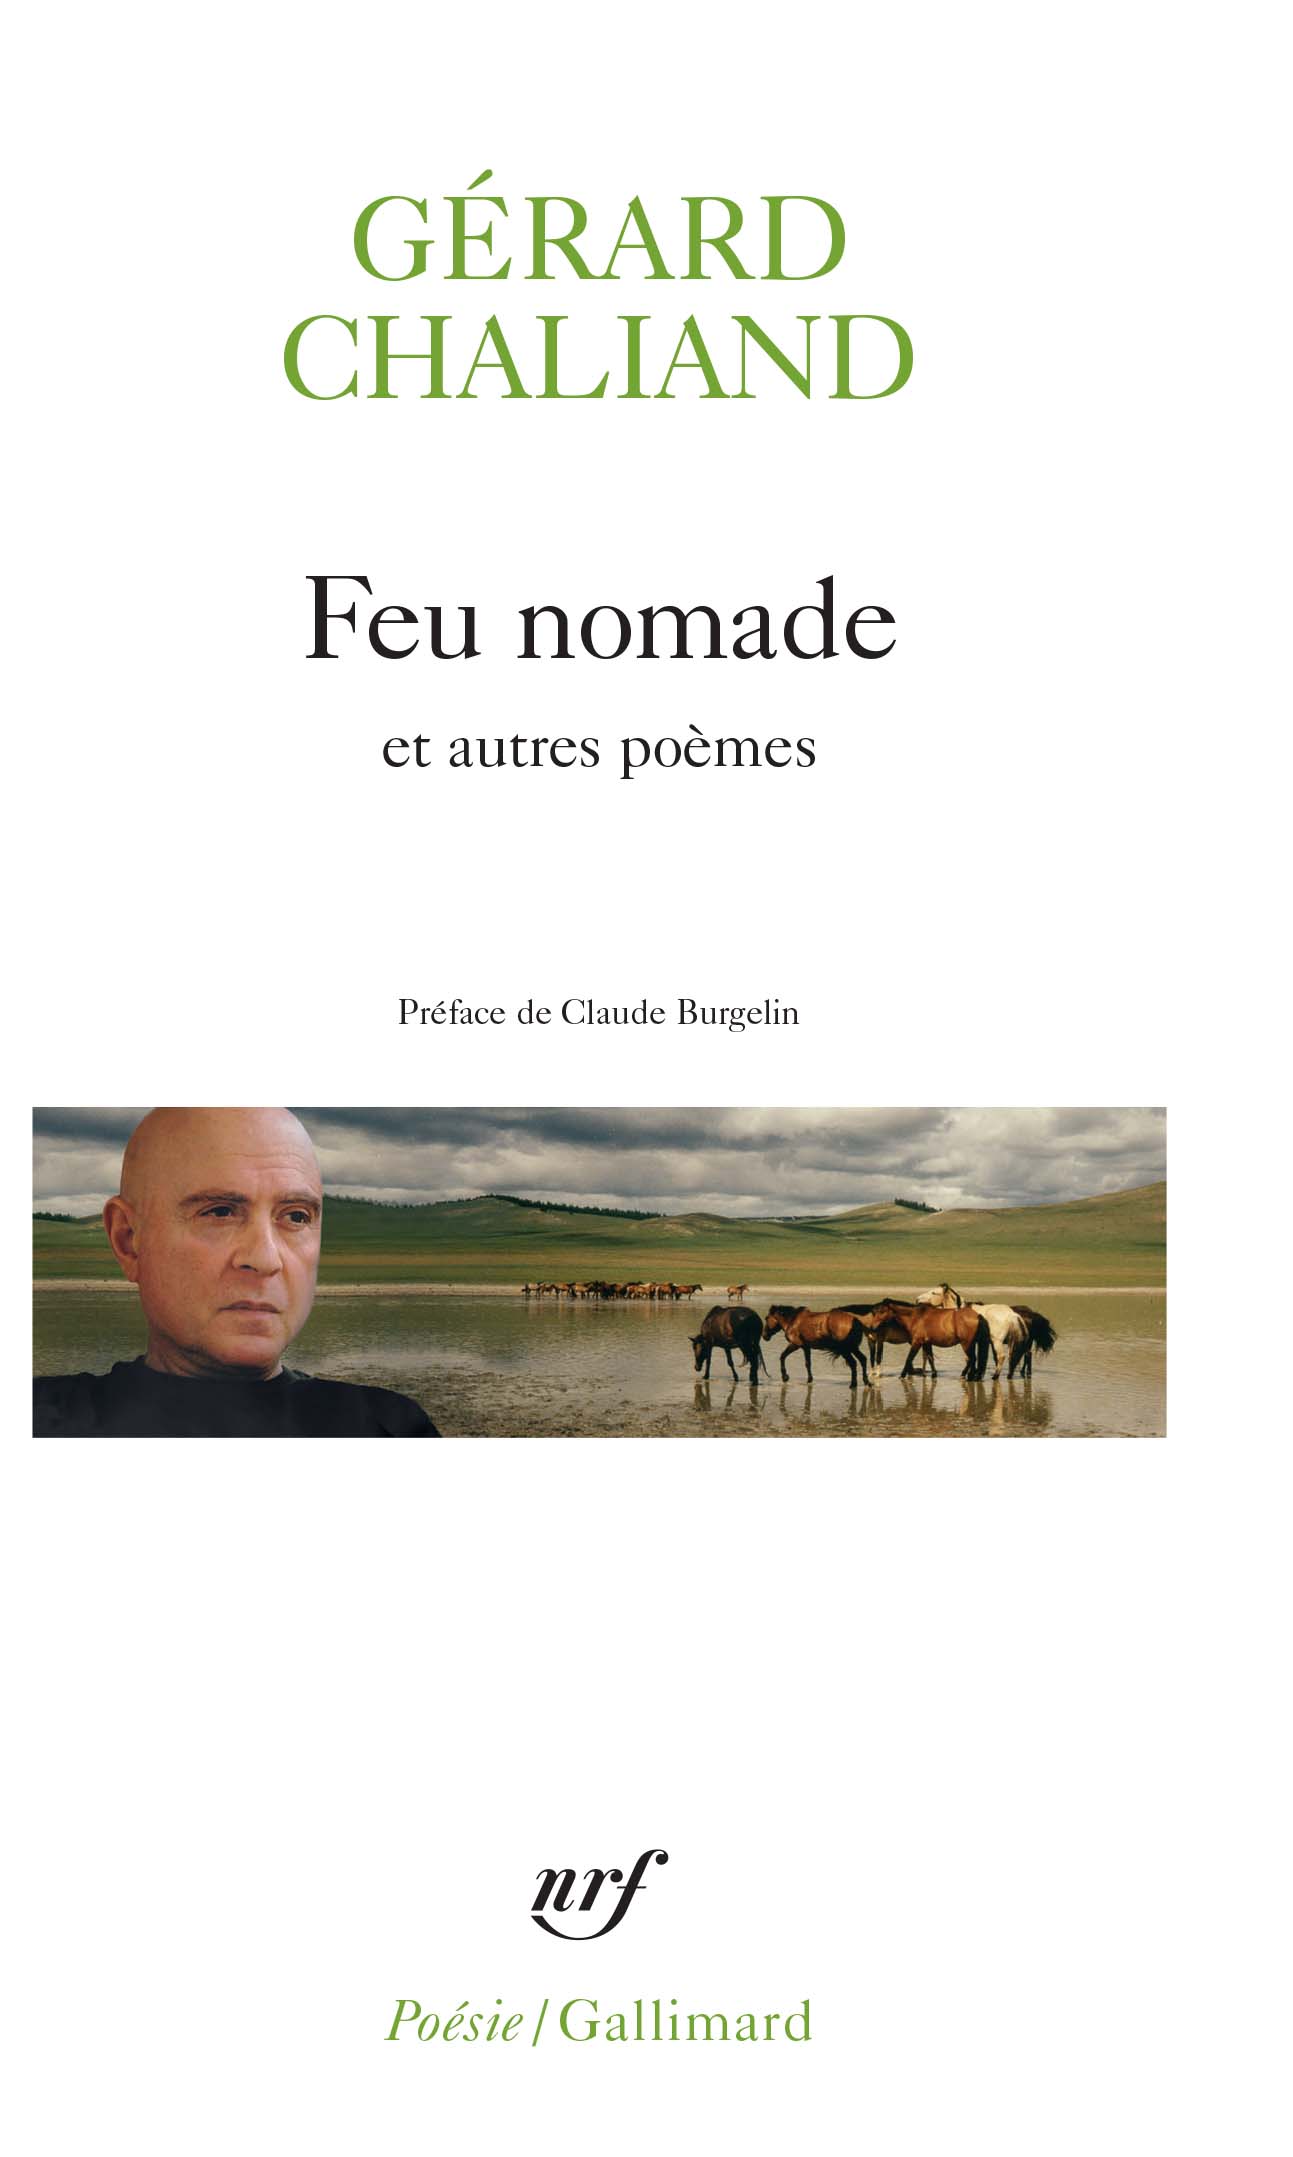 Feu nomade et autres poèmes. Gérard Chaliand